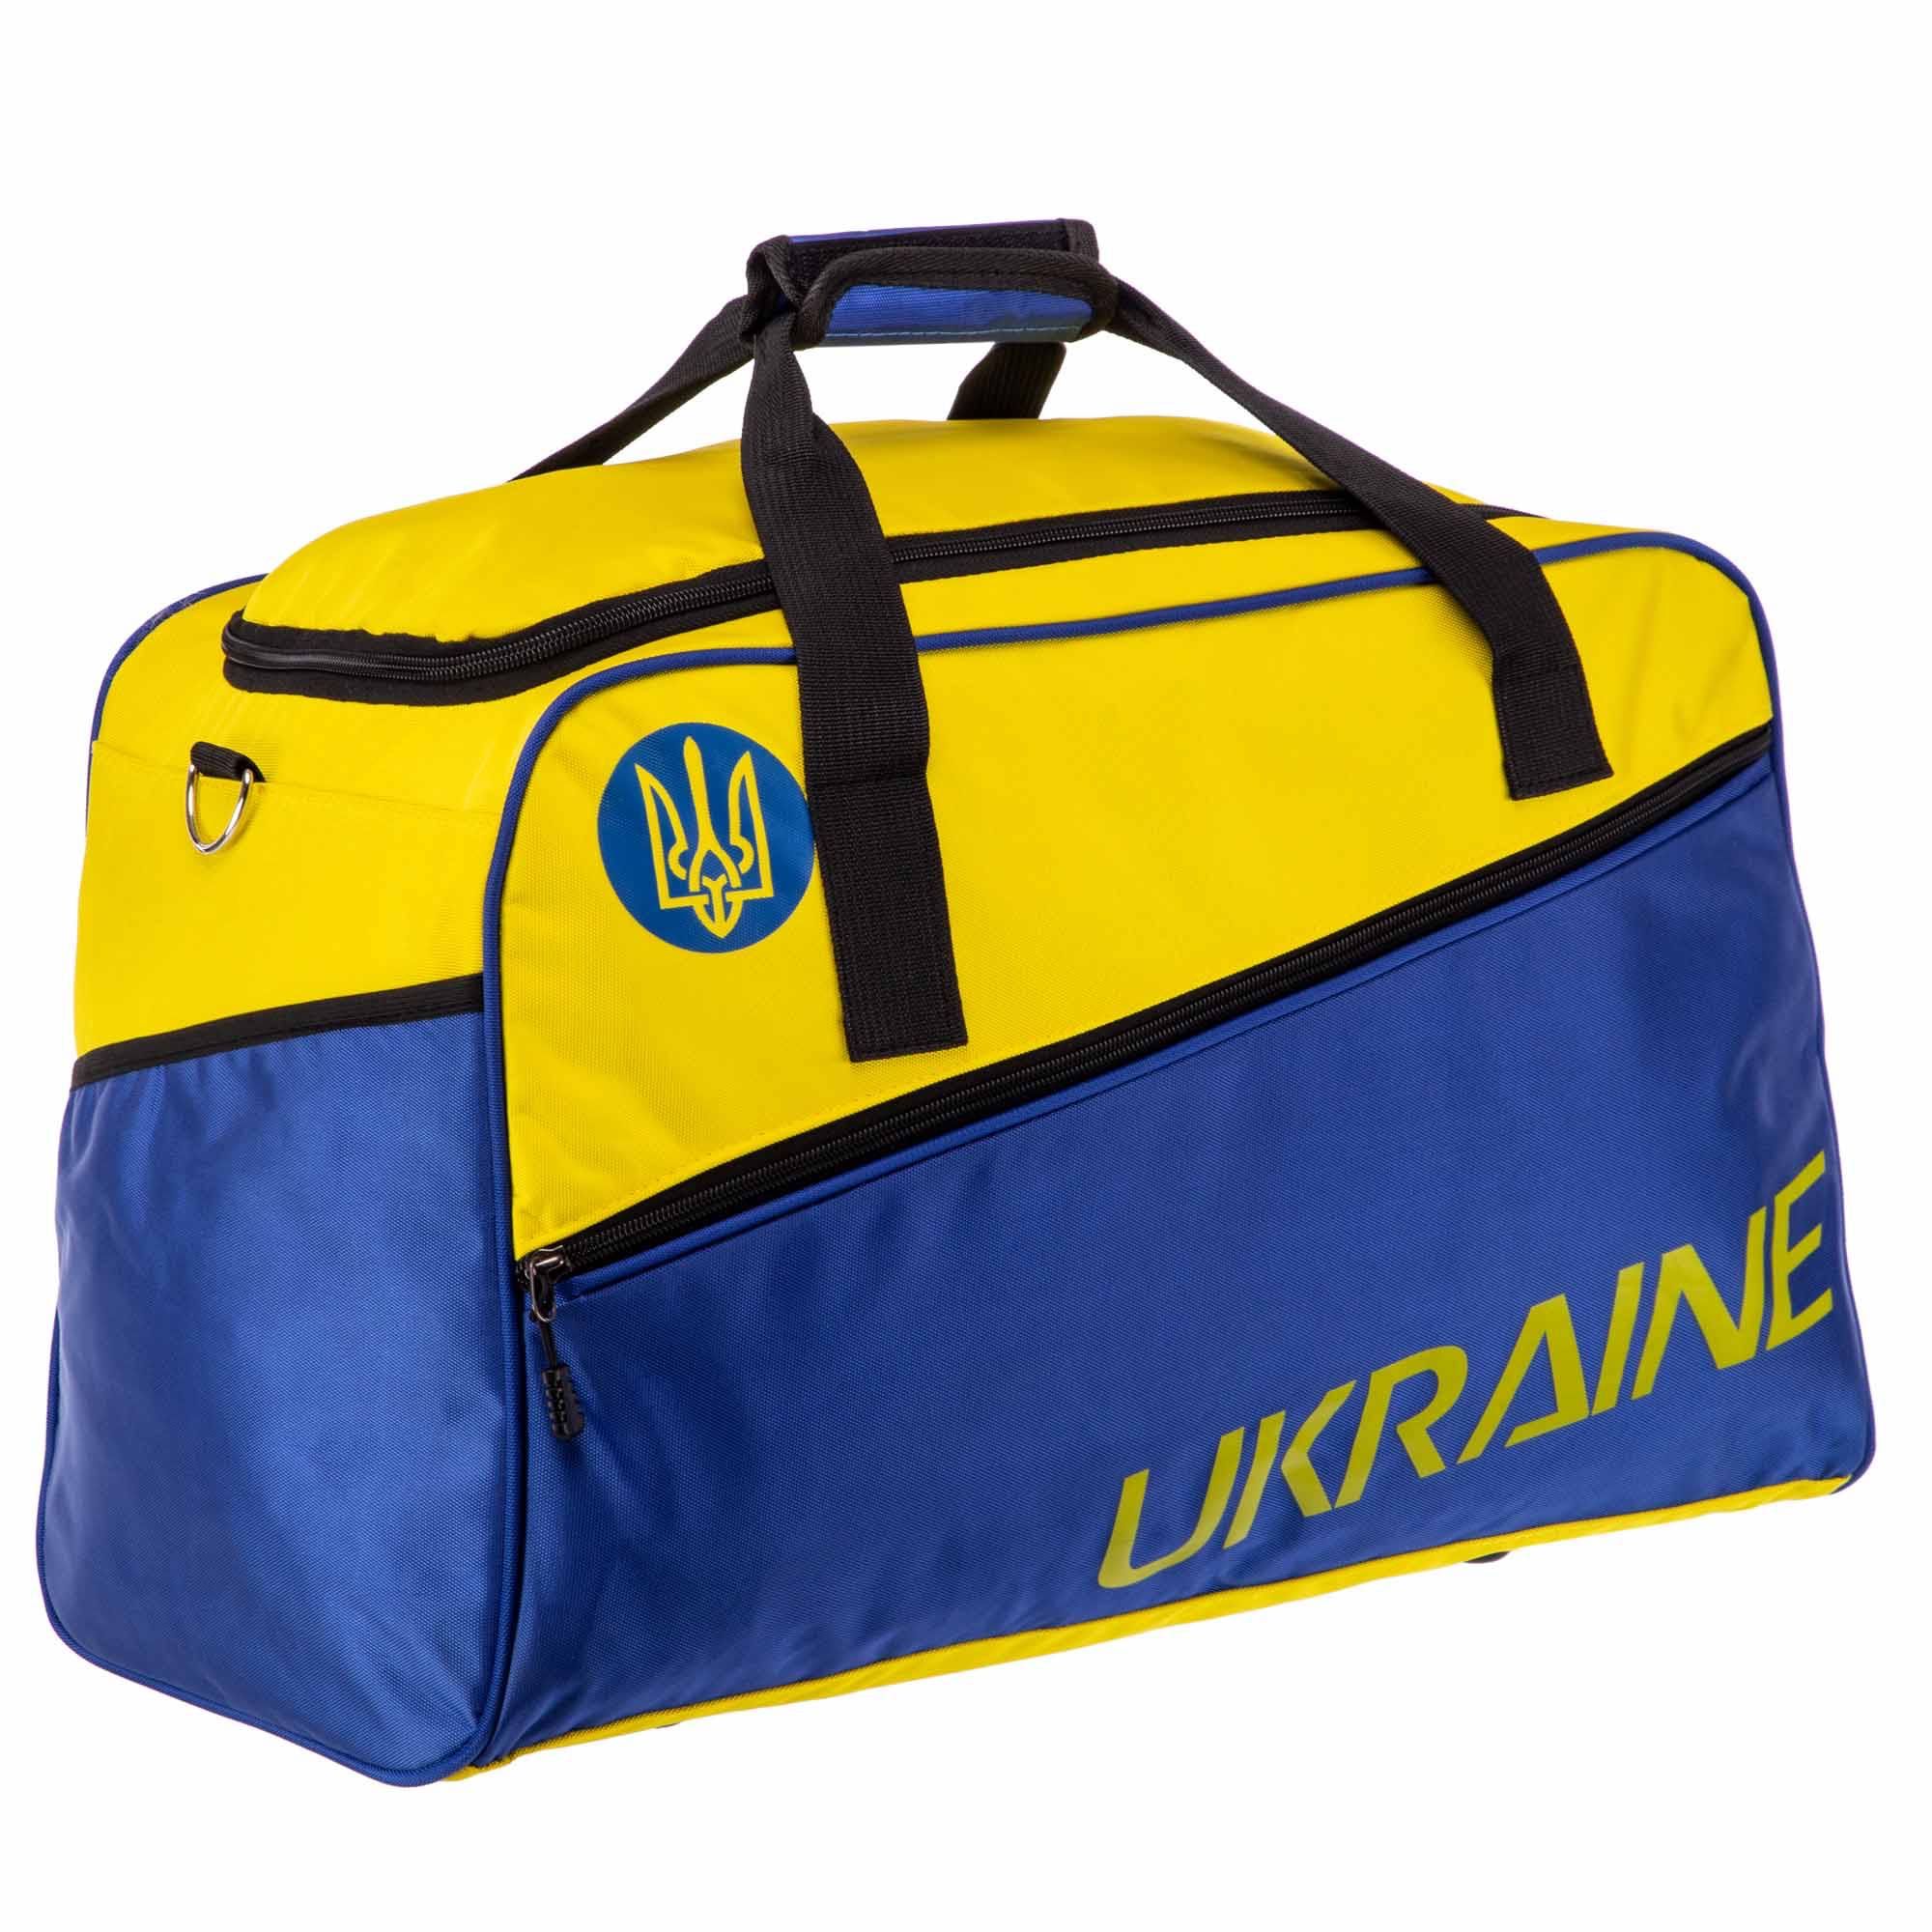 Сумка дорожная спортивная Ukraine 702 размер 52 x 33 x 26 см 45 литров